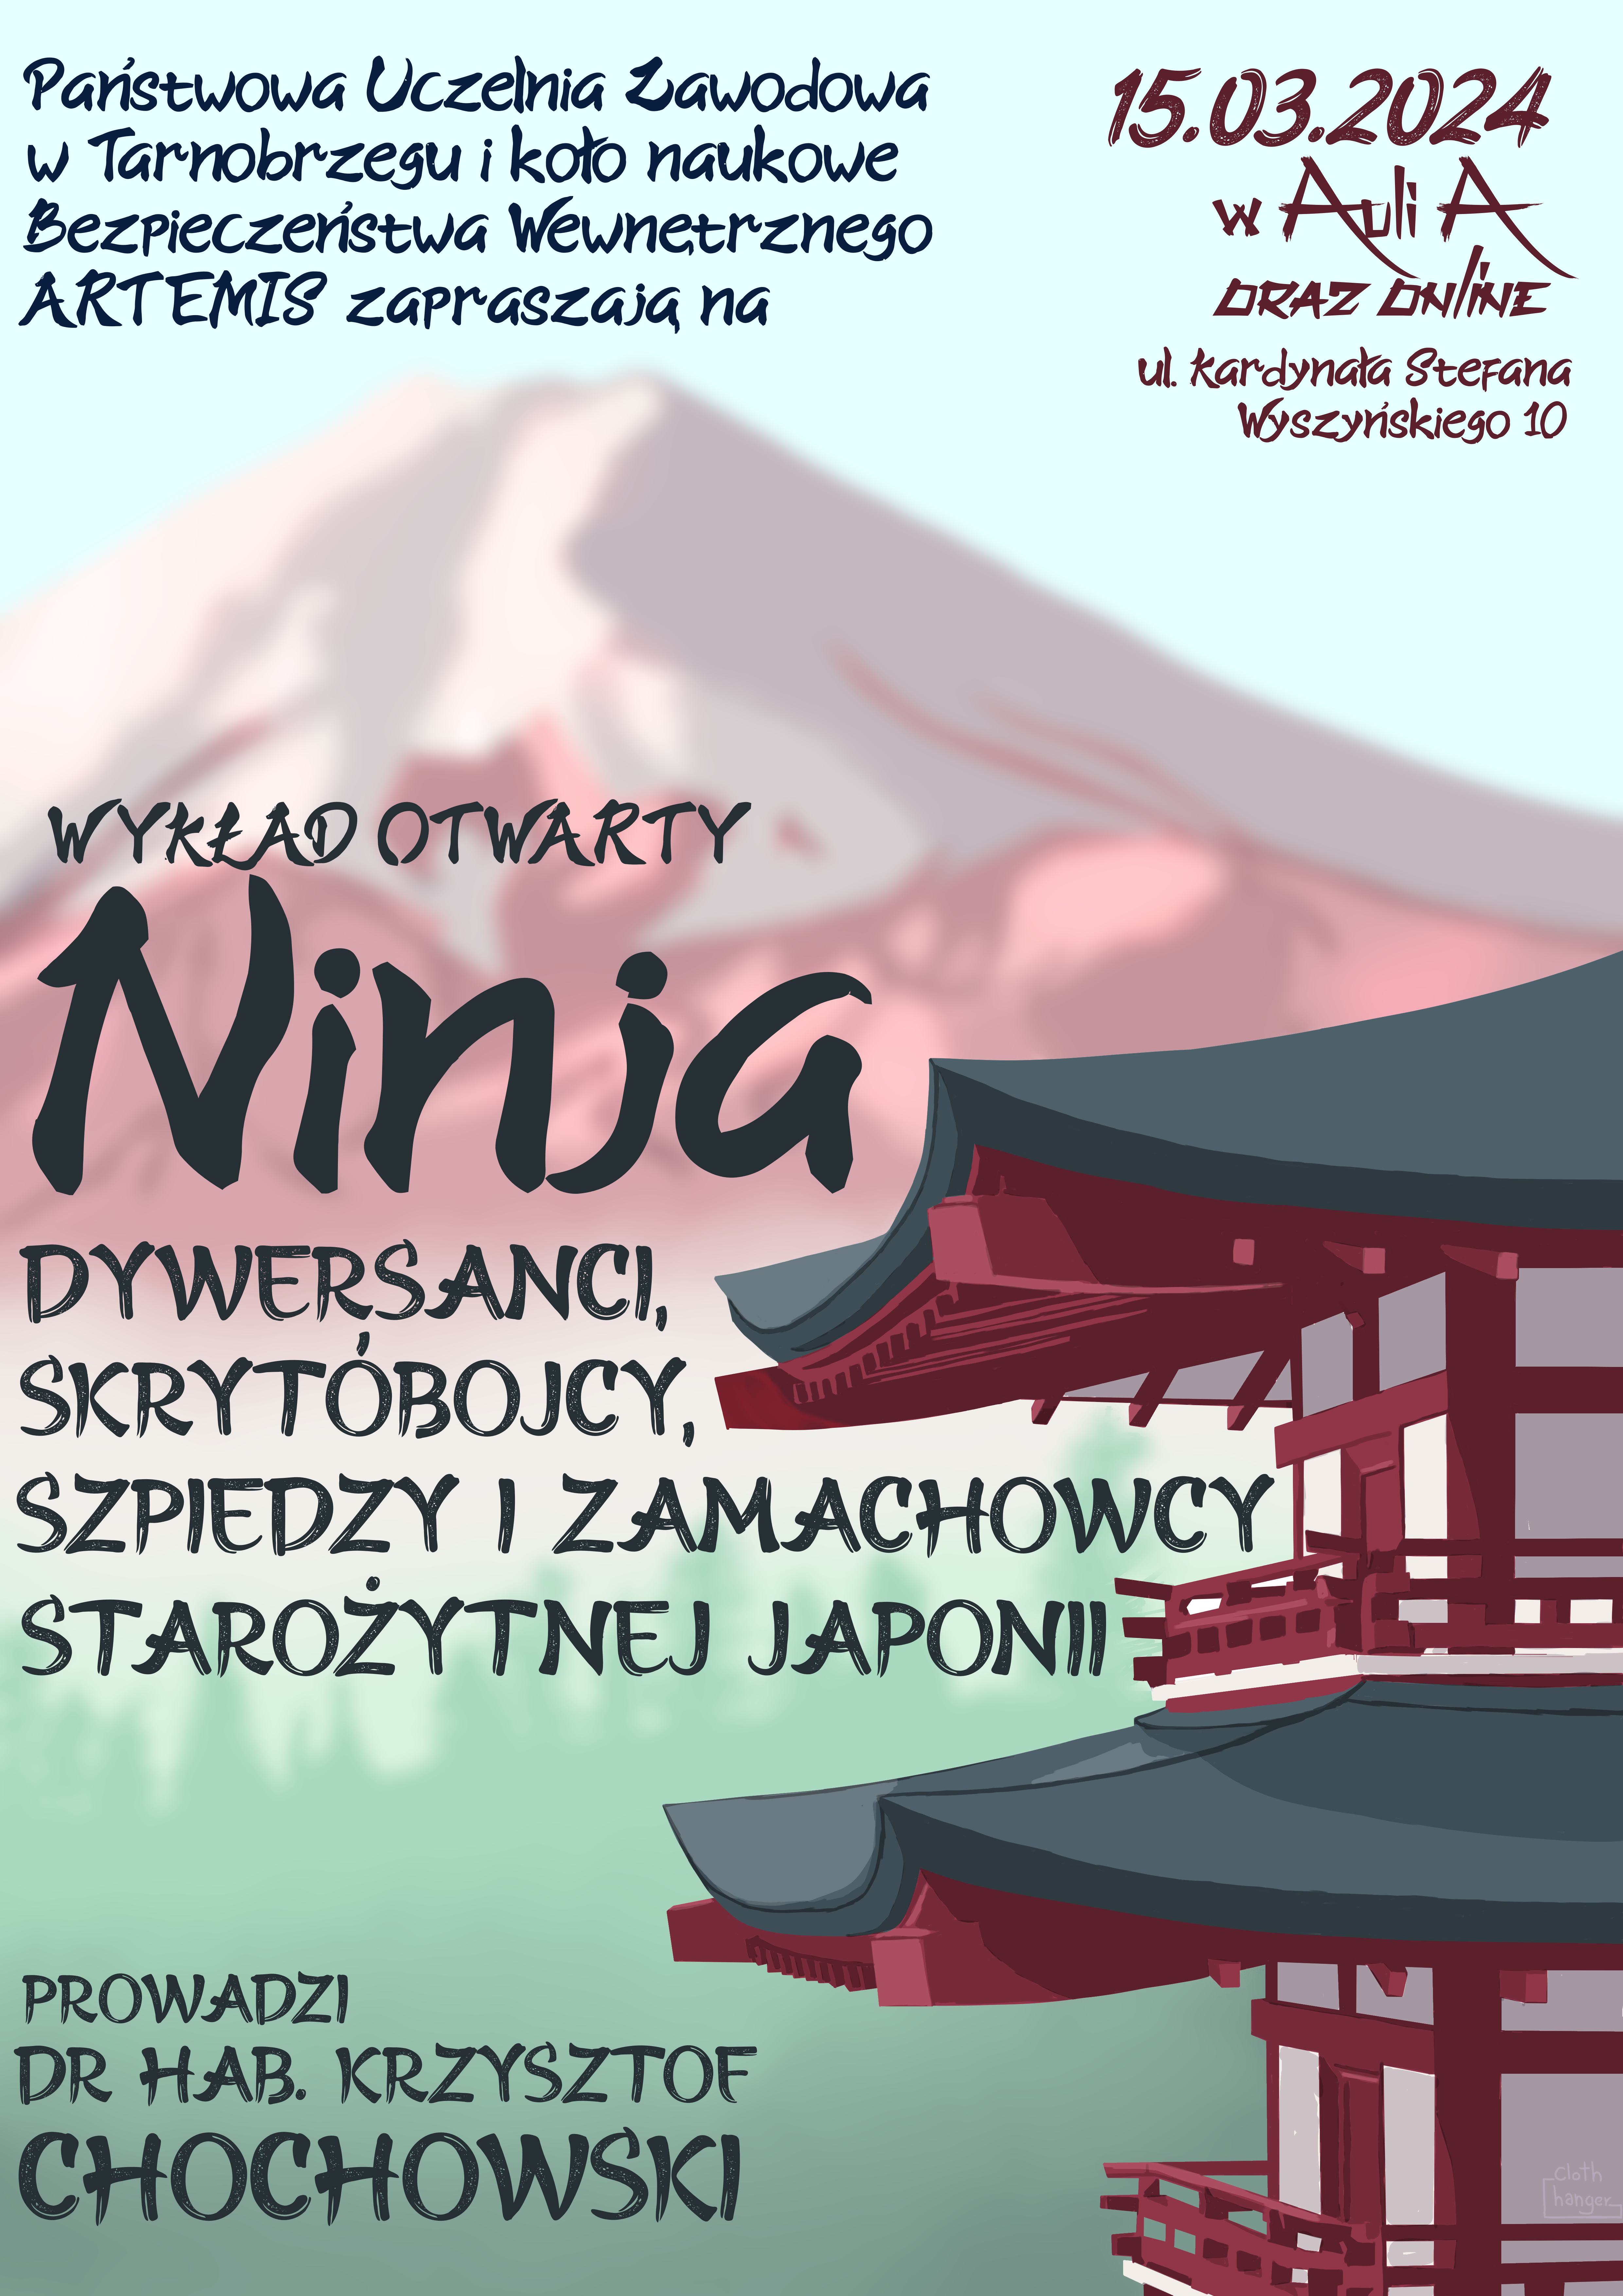 plakat informujący o wykładzie otwartym on-line pt.: "Ninja dywersanci, skrytobójcy, szpiedzy i zamachowcy starożytnej Japonii"